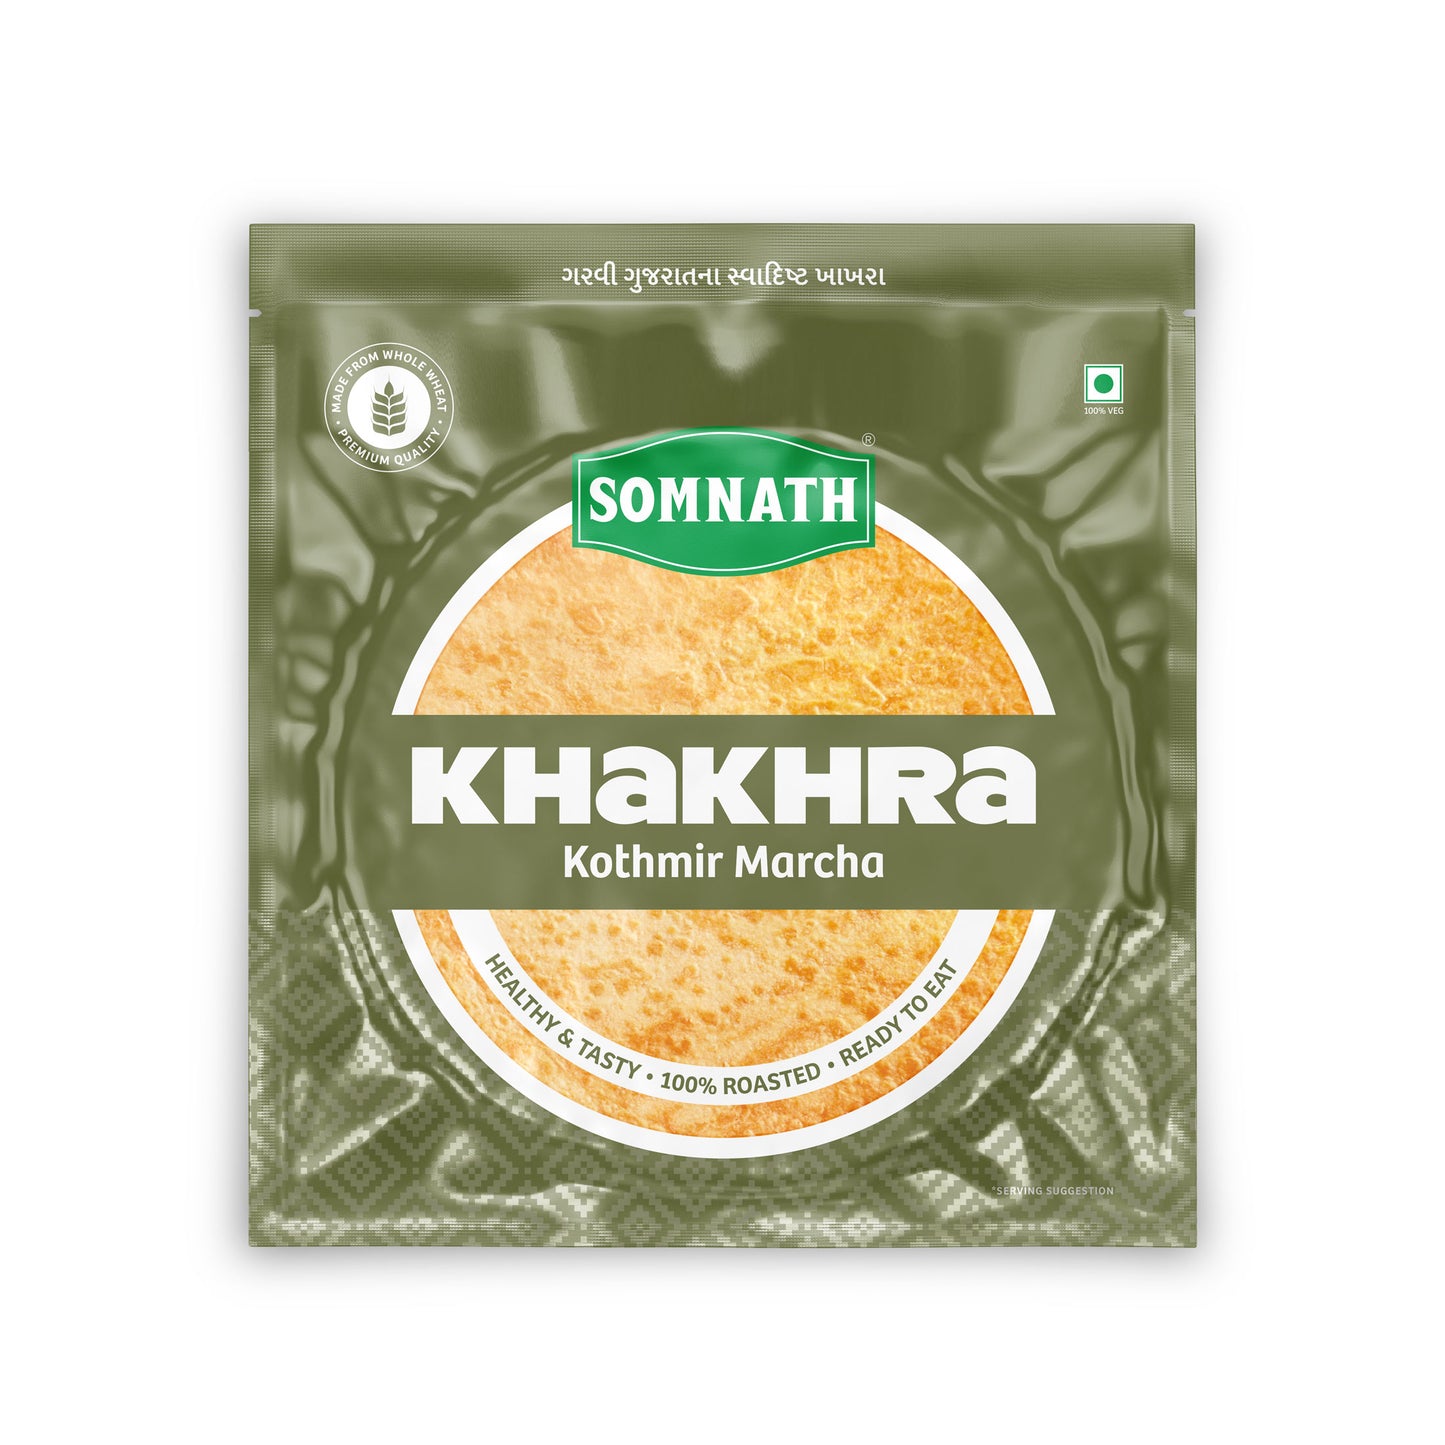 Somnath Kothmir Marcha Khakhra